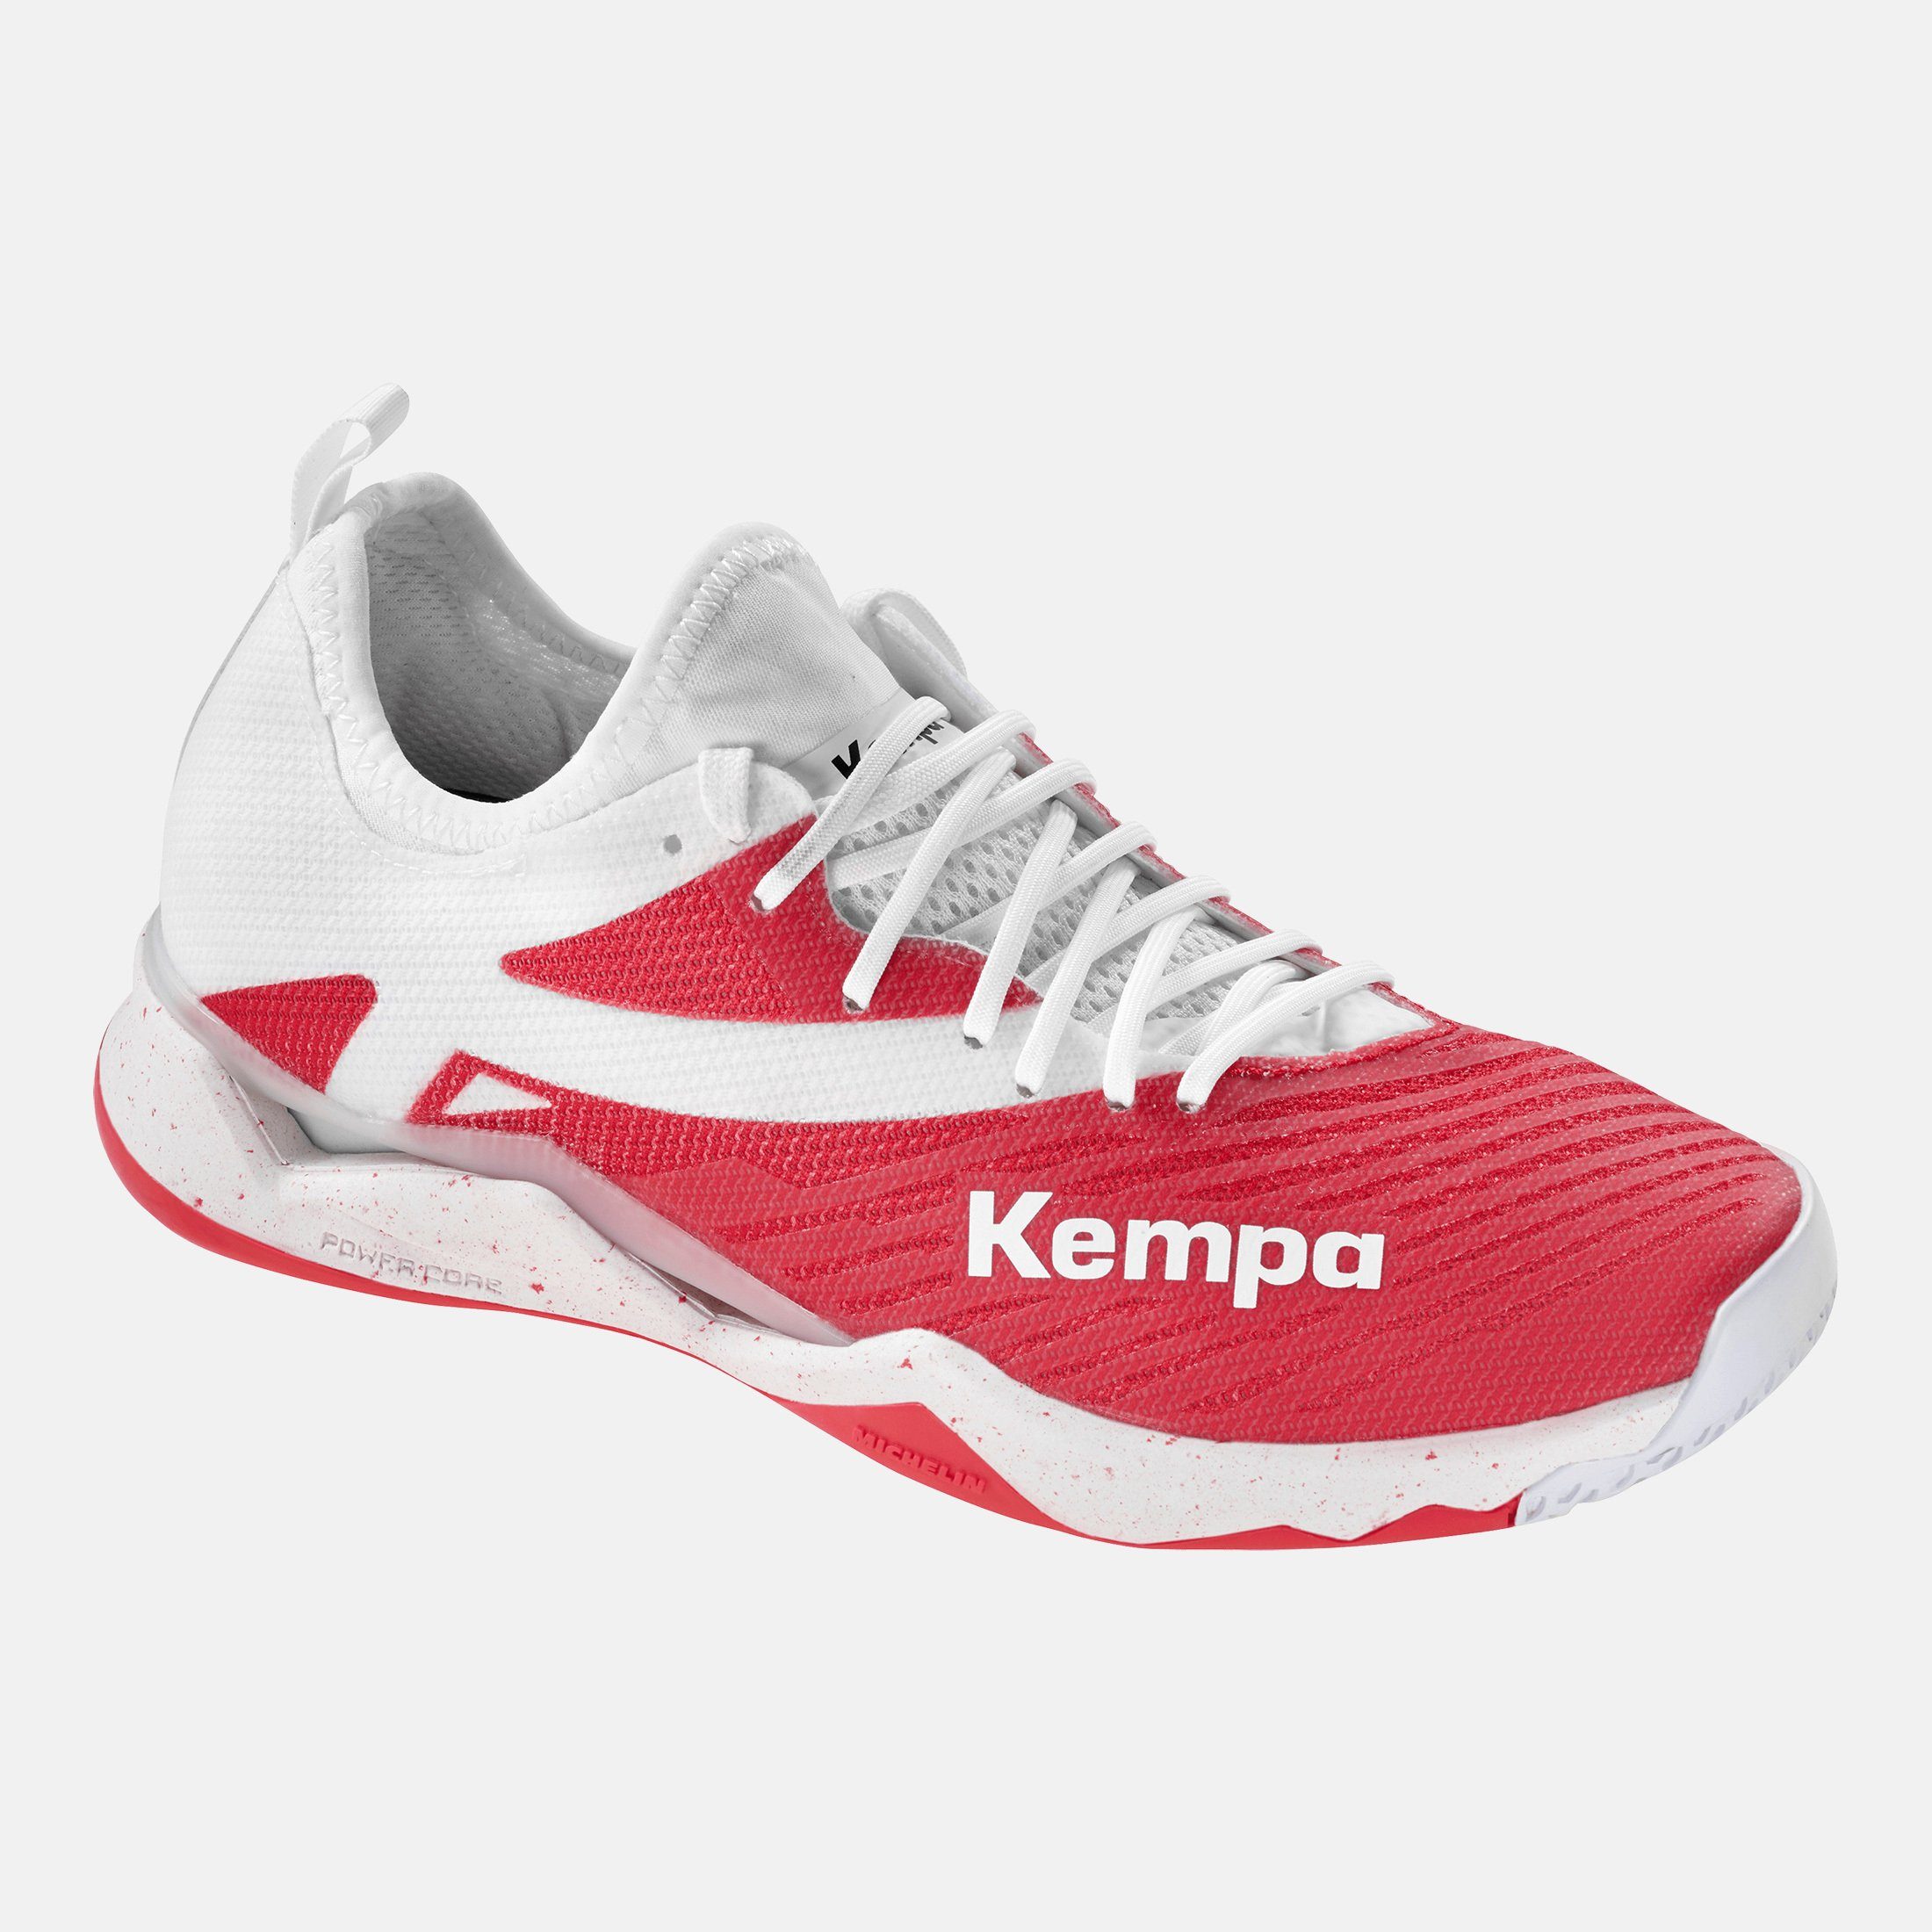 Kempa Kempa Hallen-Sport-Schuhe Hallenschuh weiß/rot